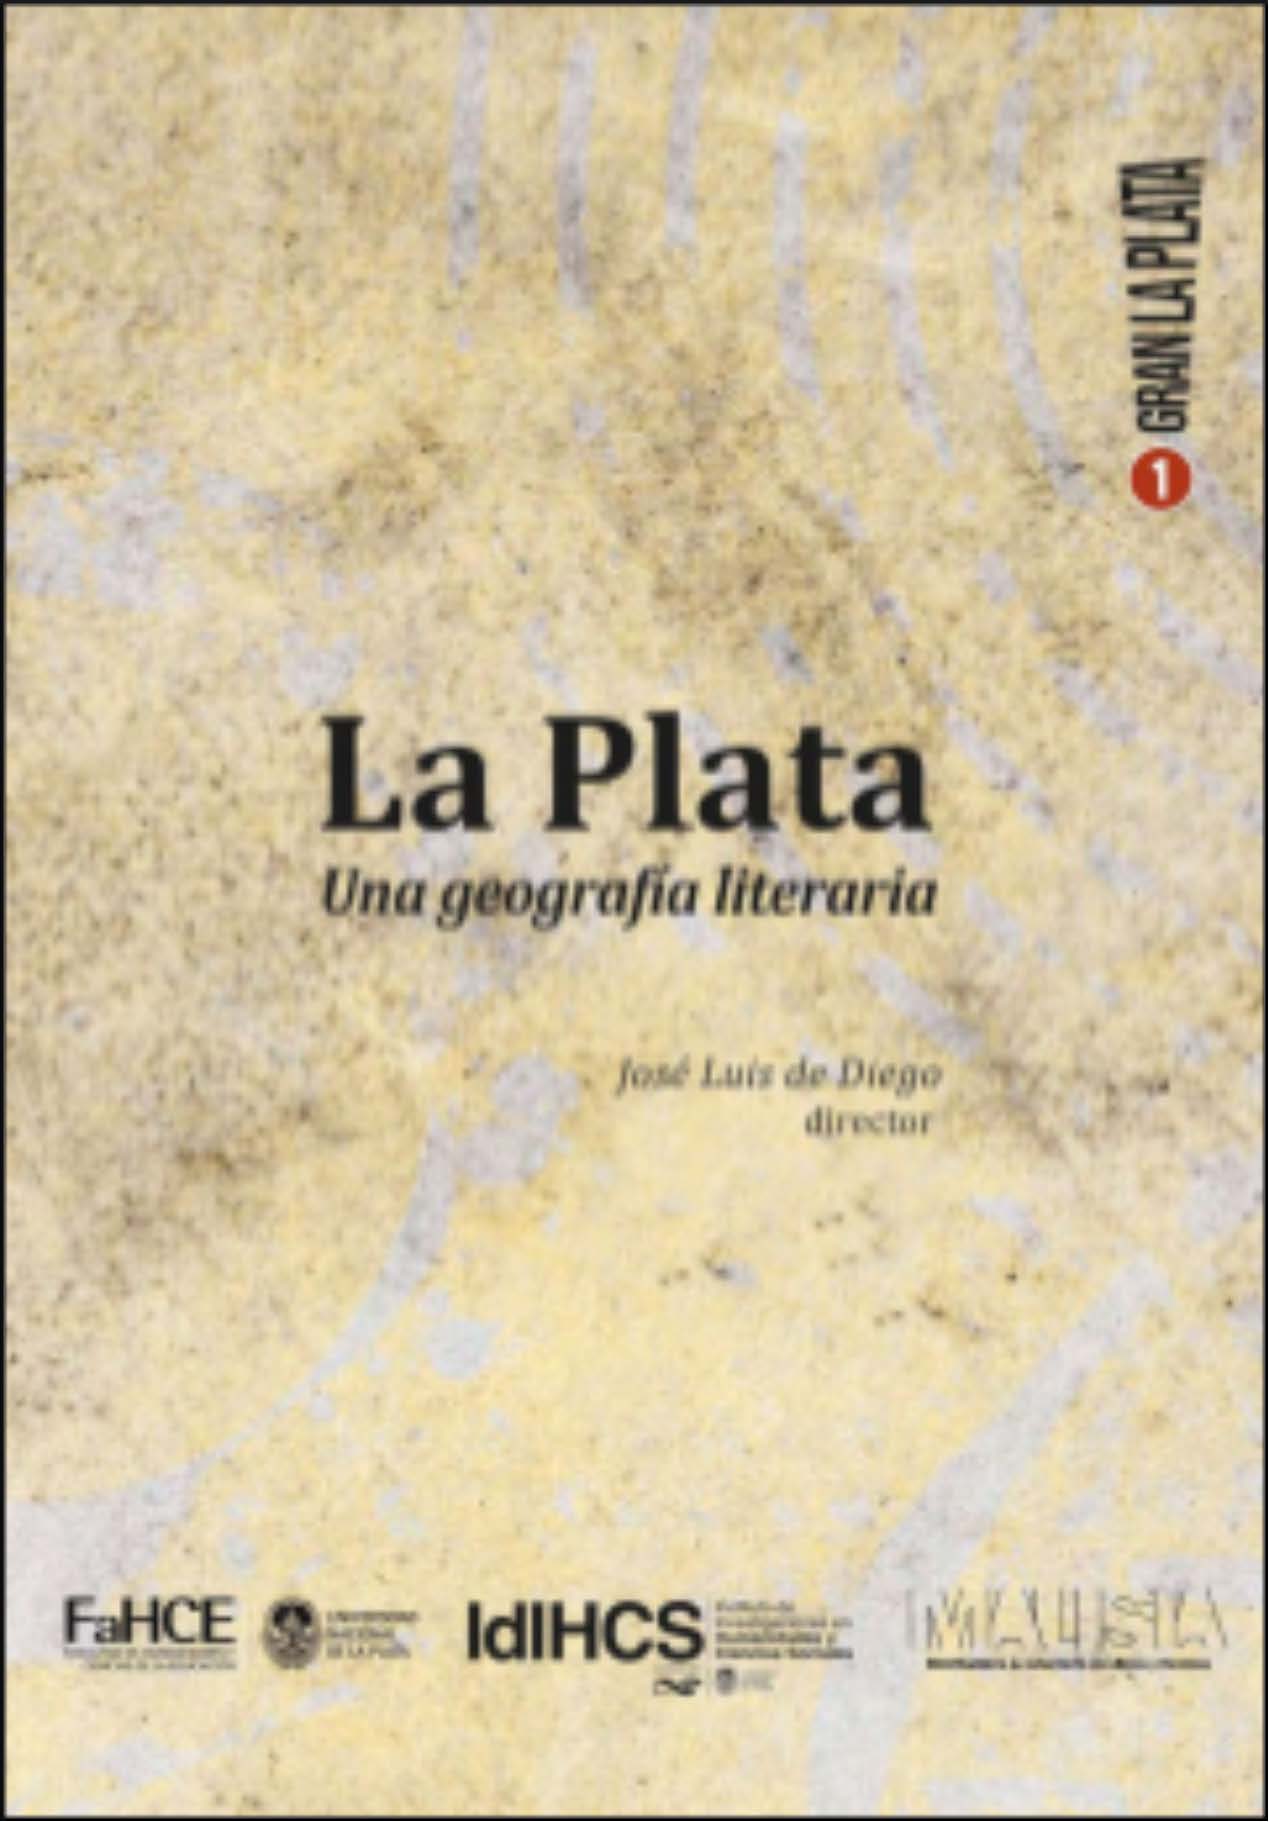 La Plata: Una geografía literaria